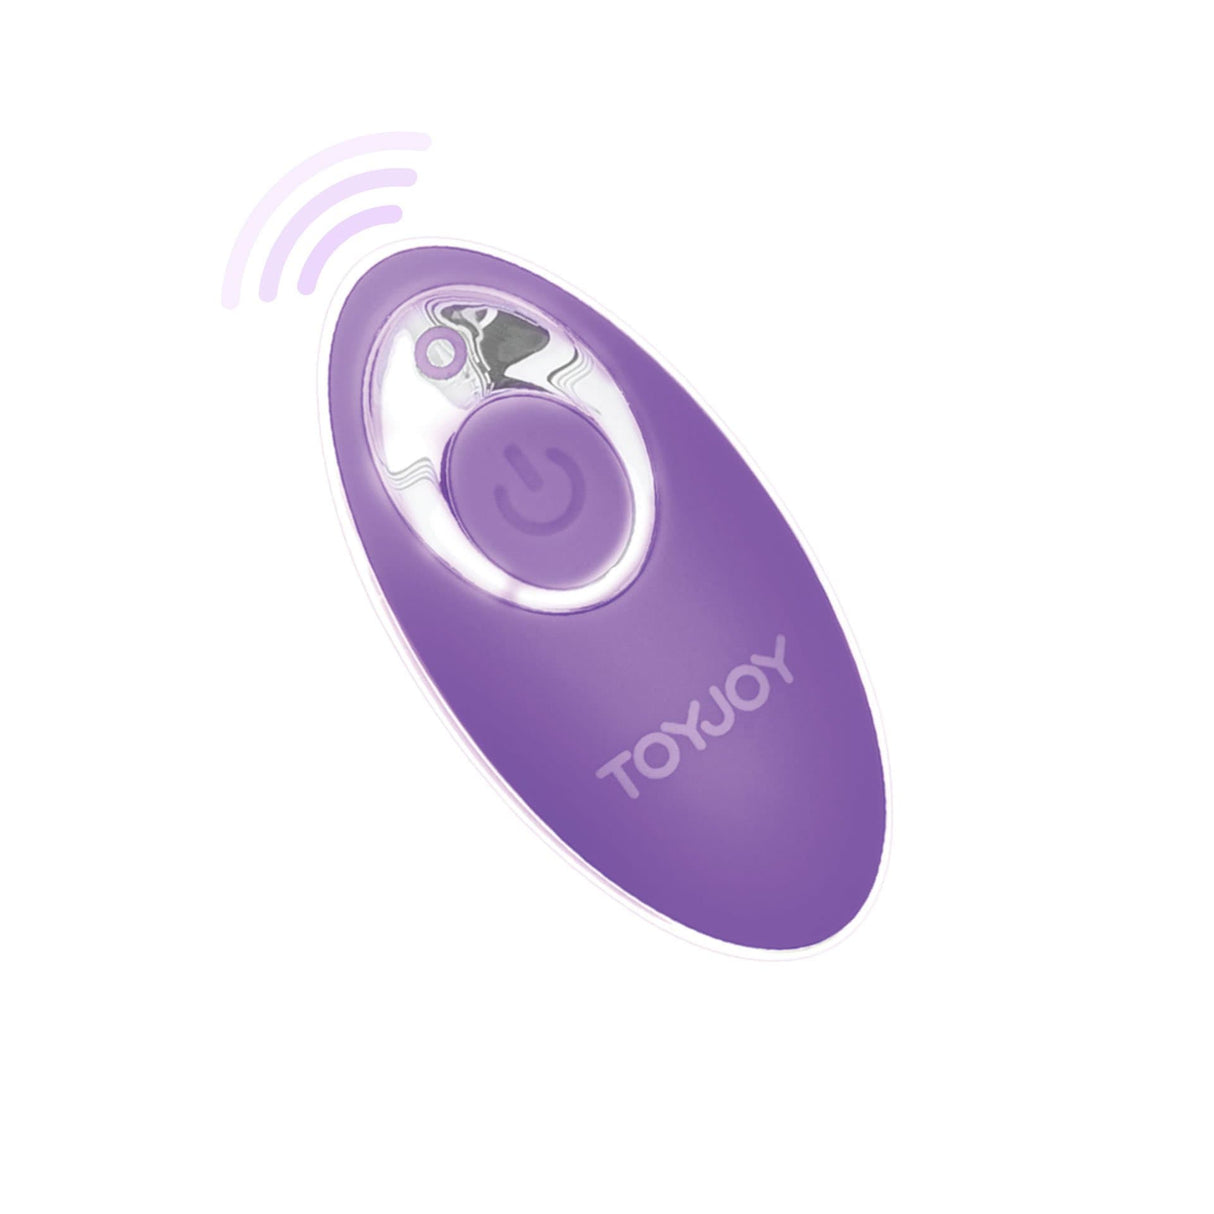 ToyJoy - My Orgasm Eggsplode Remote Control Egg Vibrator (Purple) TJ1077 CherryAffairs